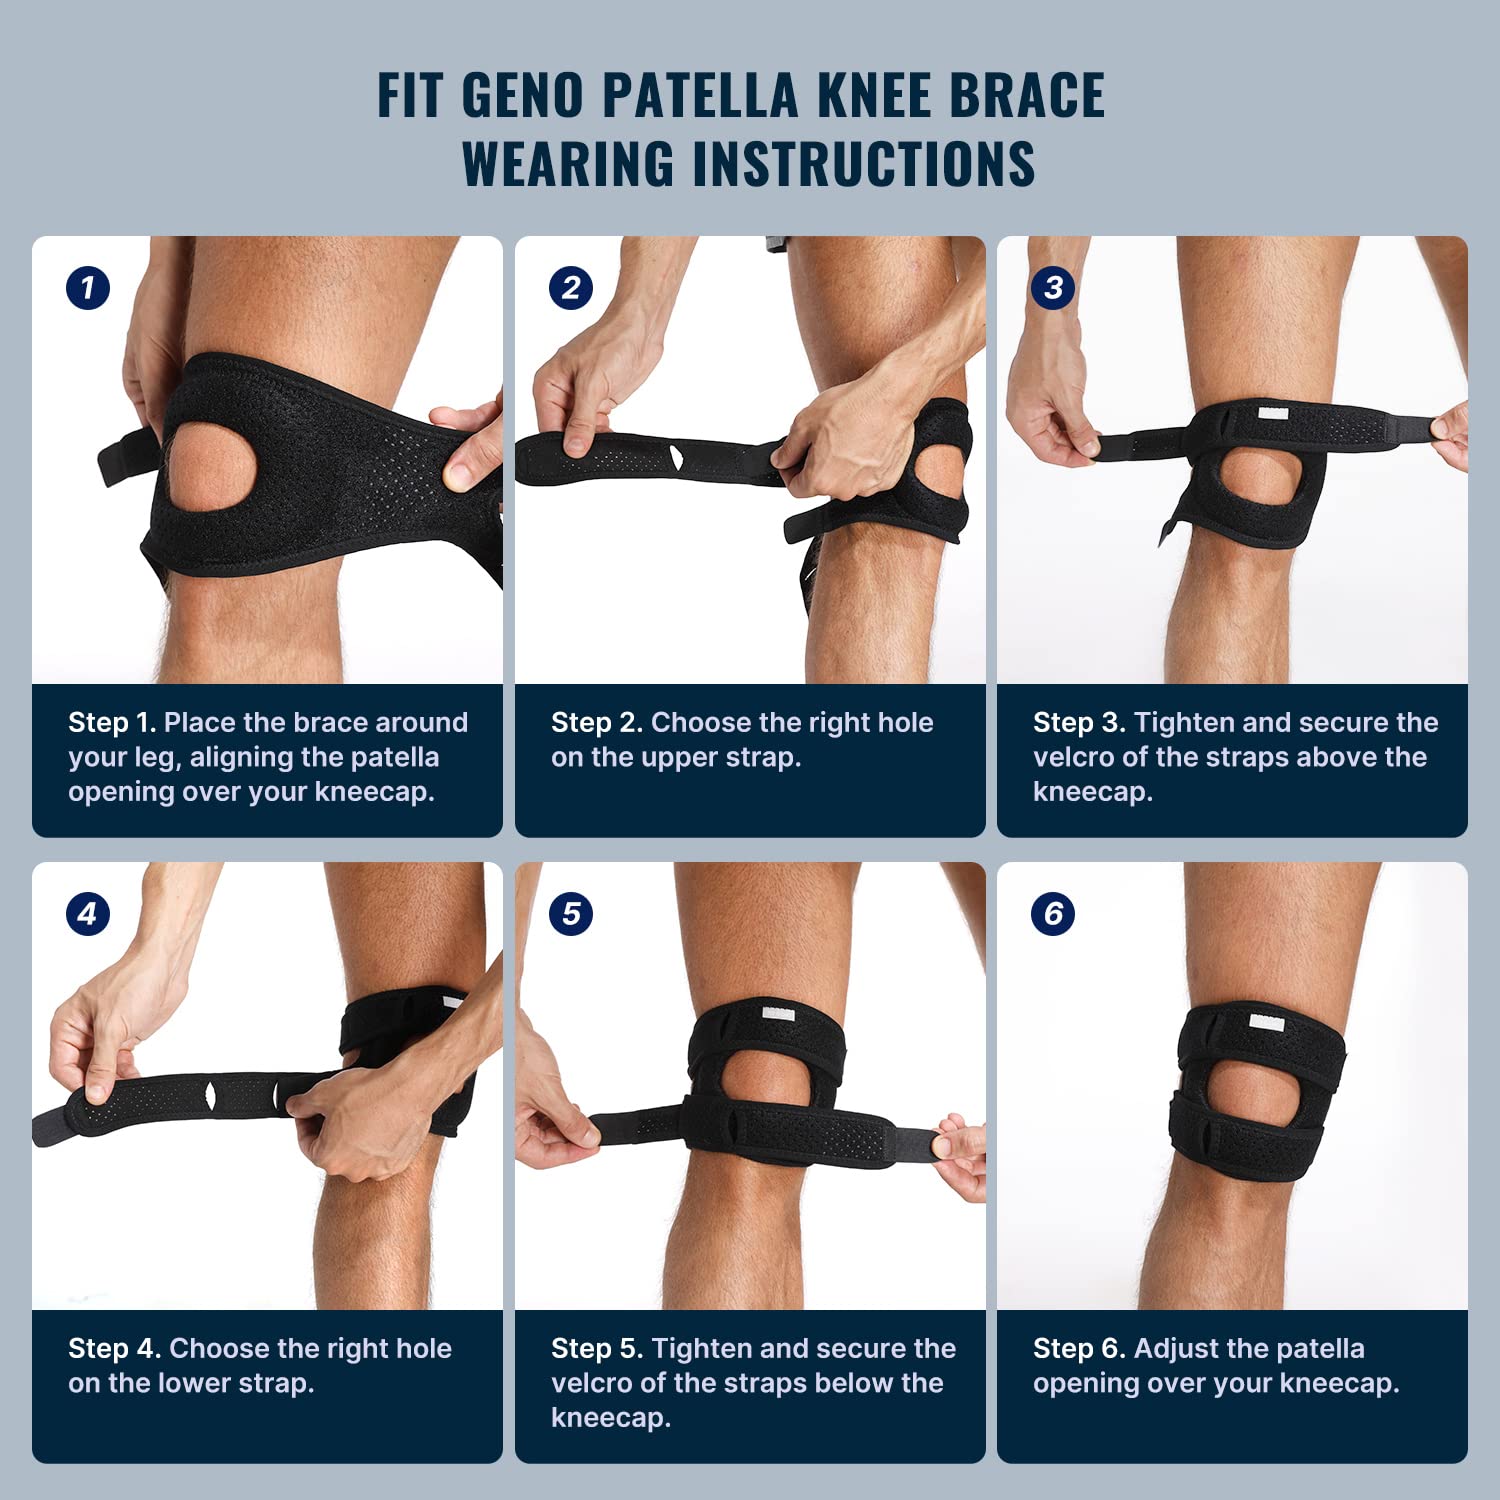 Fit Geno Patella Knee Brace Review